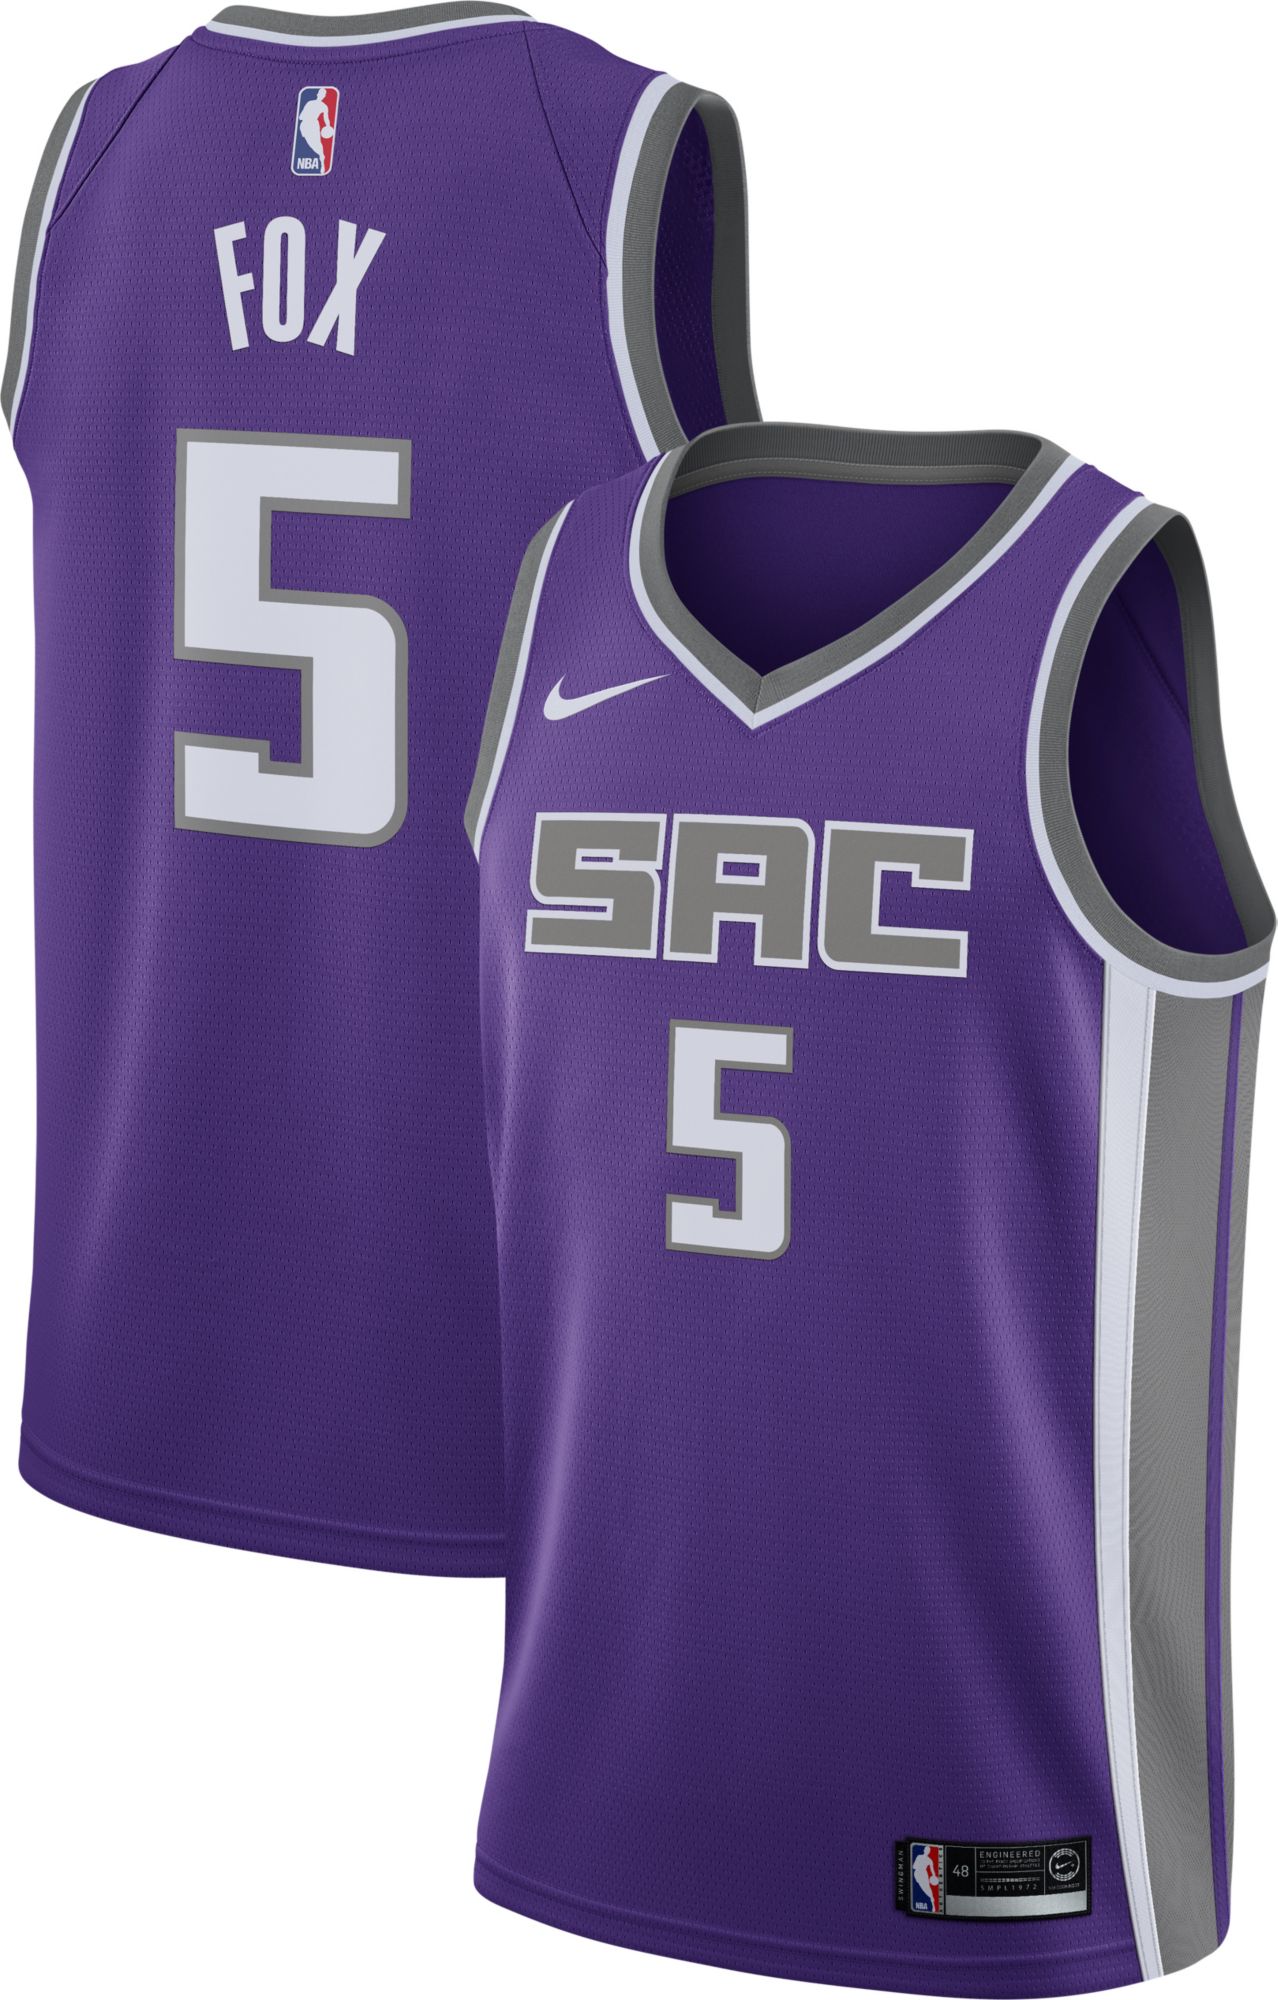 kings purple jersey | Wide choice